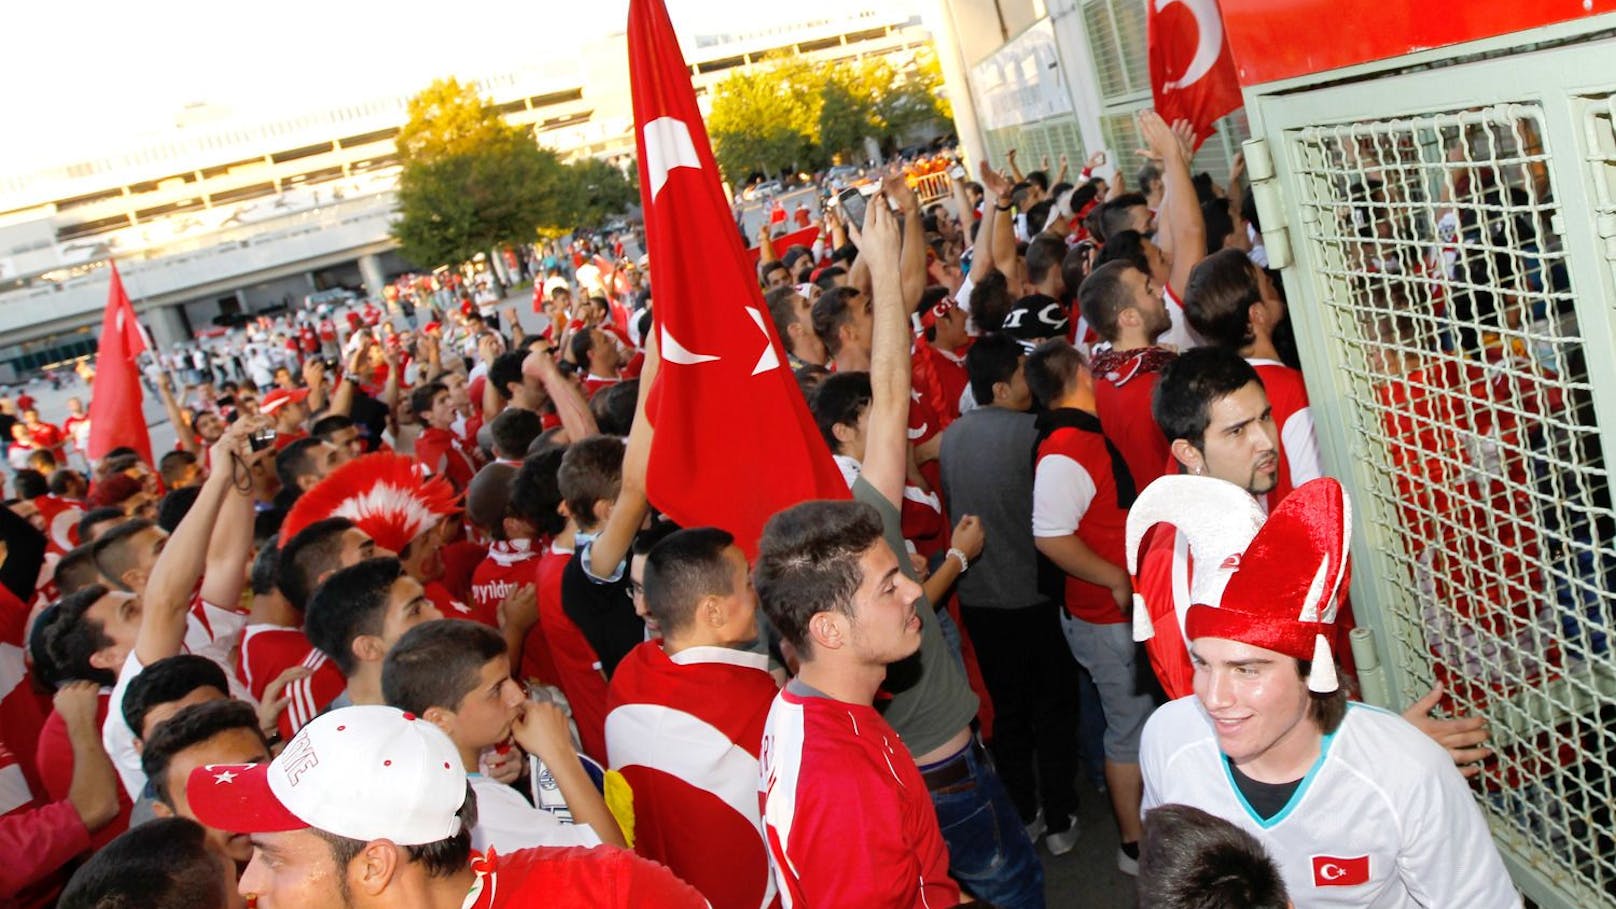 Polizei gewarnt! Großer Türkei-Fanmarsch durch Wien